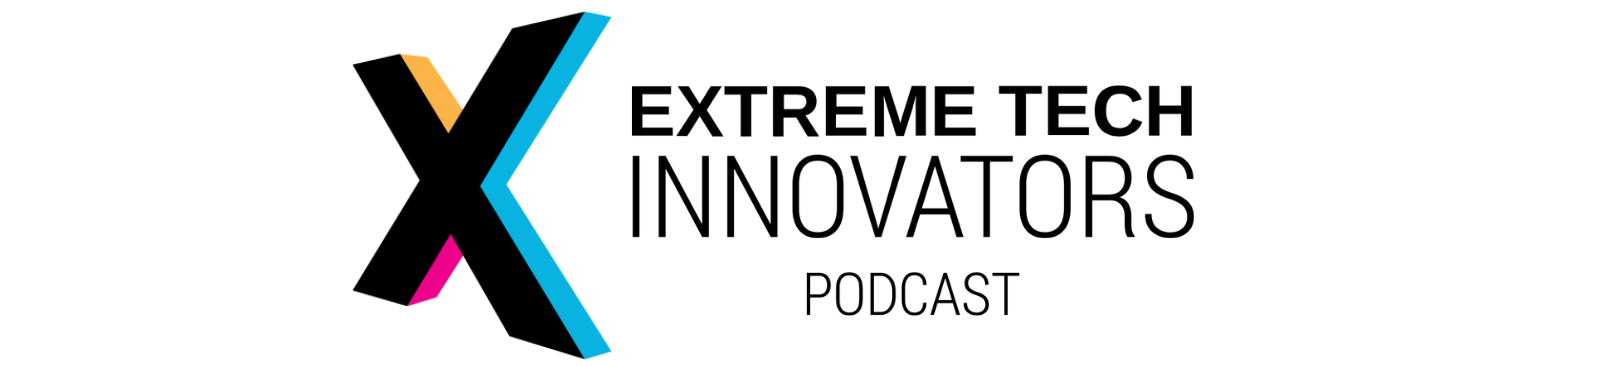 Extreme Tech Innovators Podcast